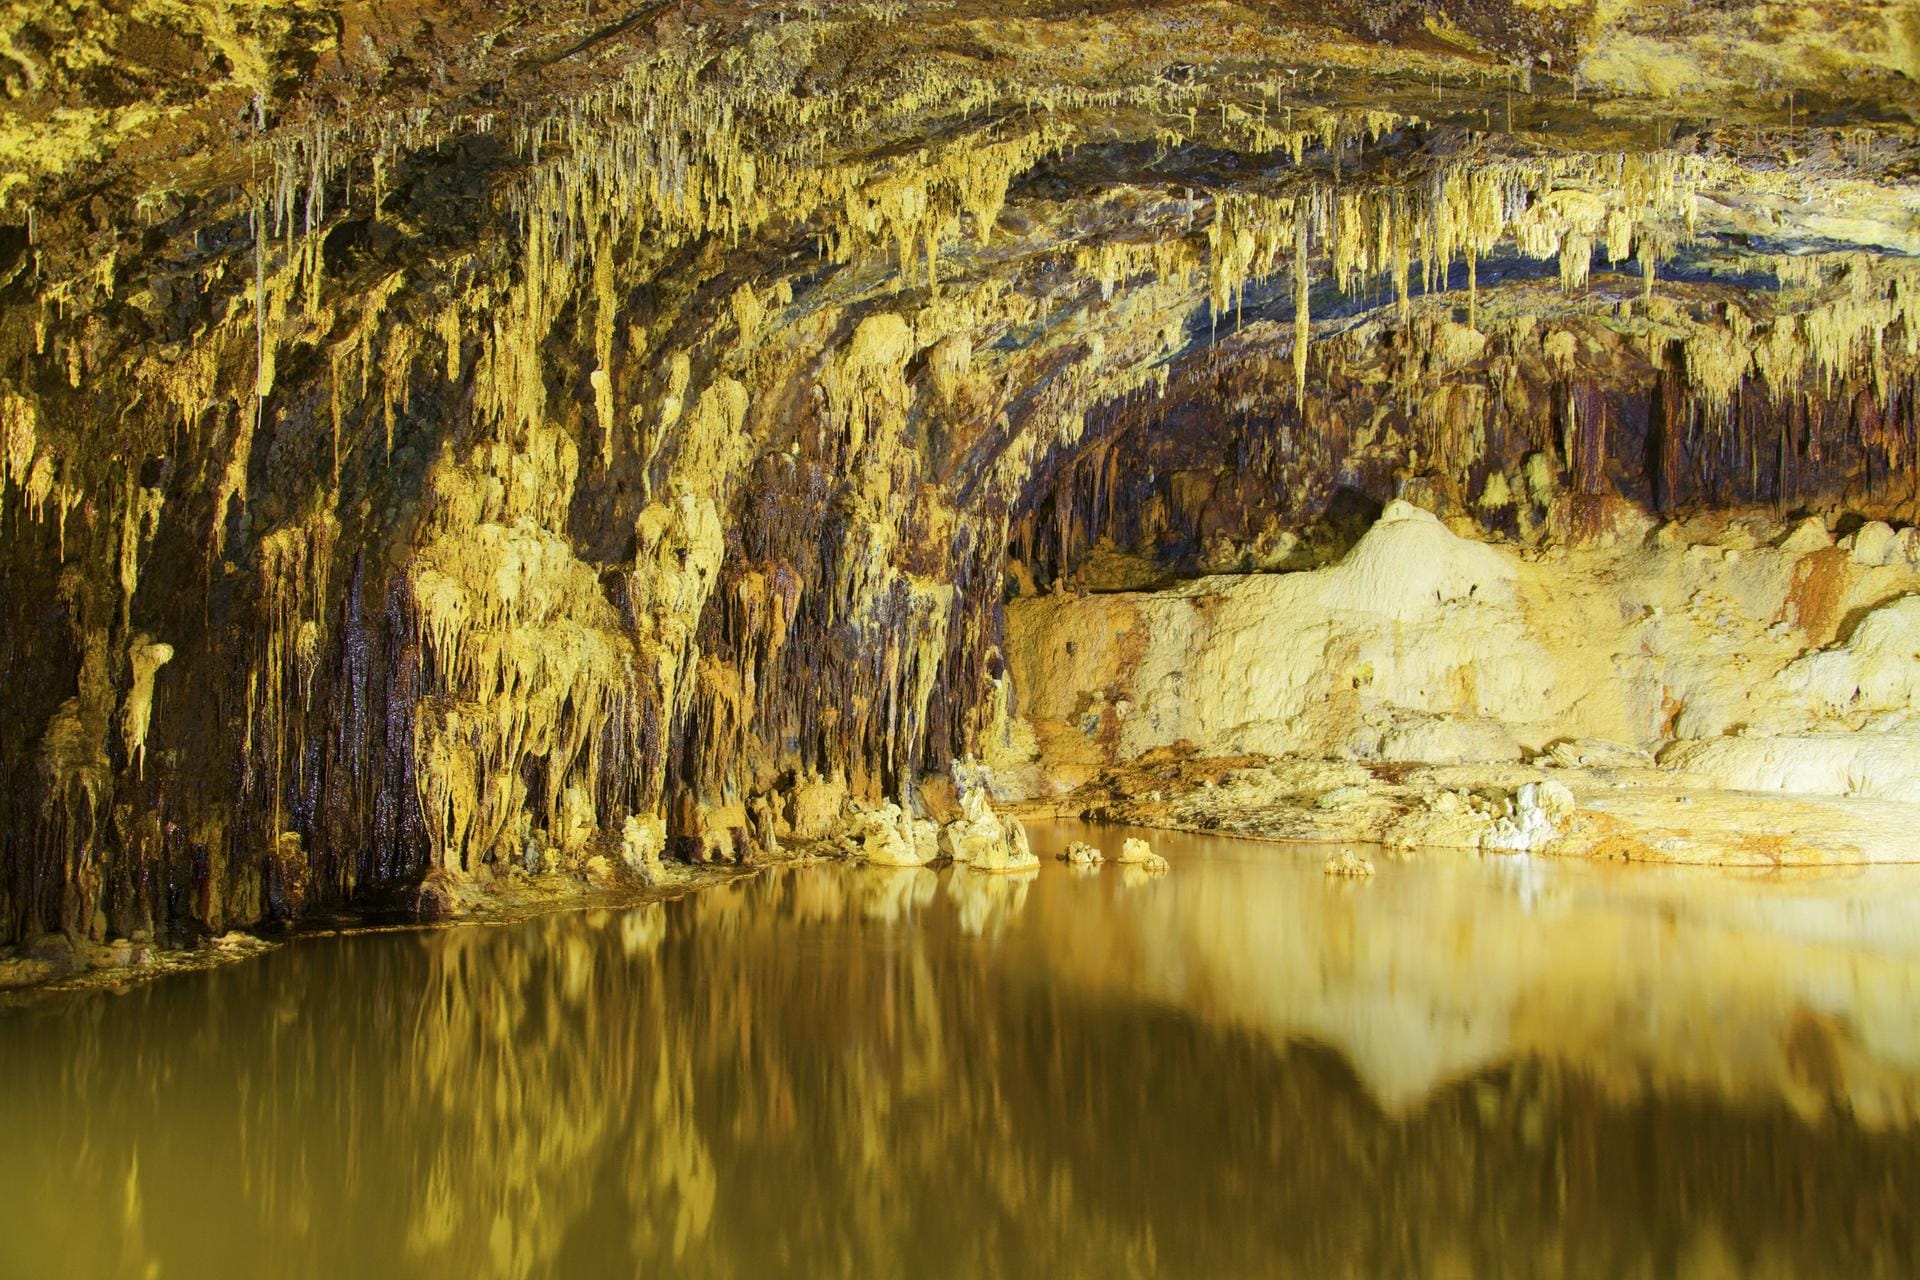 Saalfelder Feengrotten: Die bunten Tropfsteine stehen als "farbenreichste Schaugrotte der Welt" im Guinness-Buch der Rekorde.